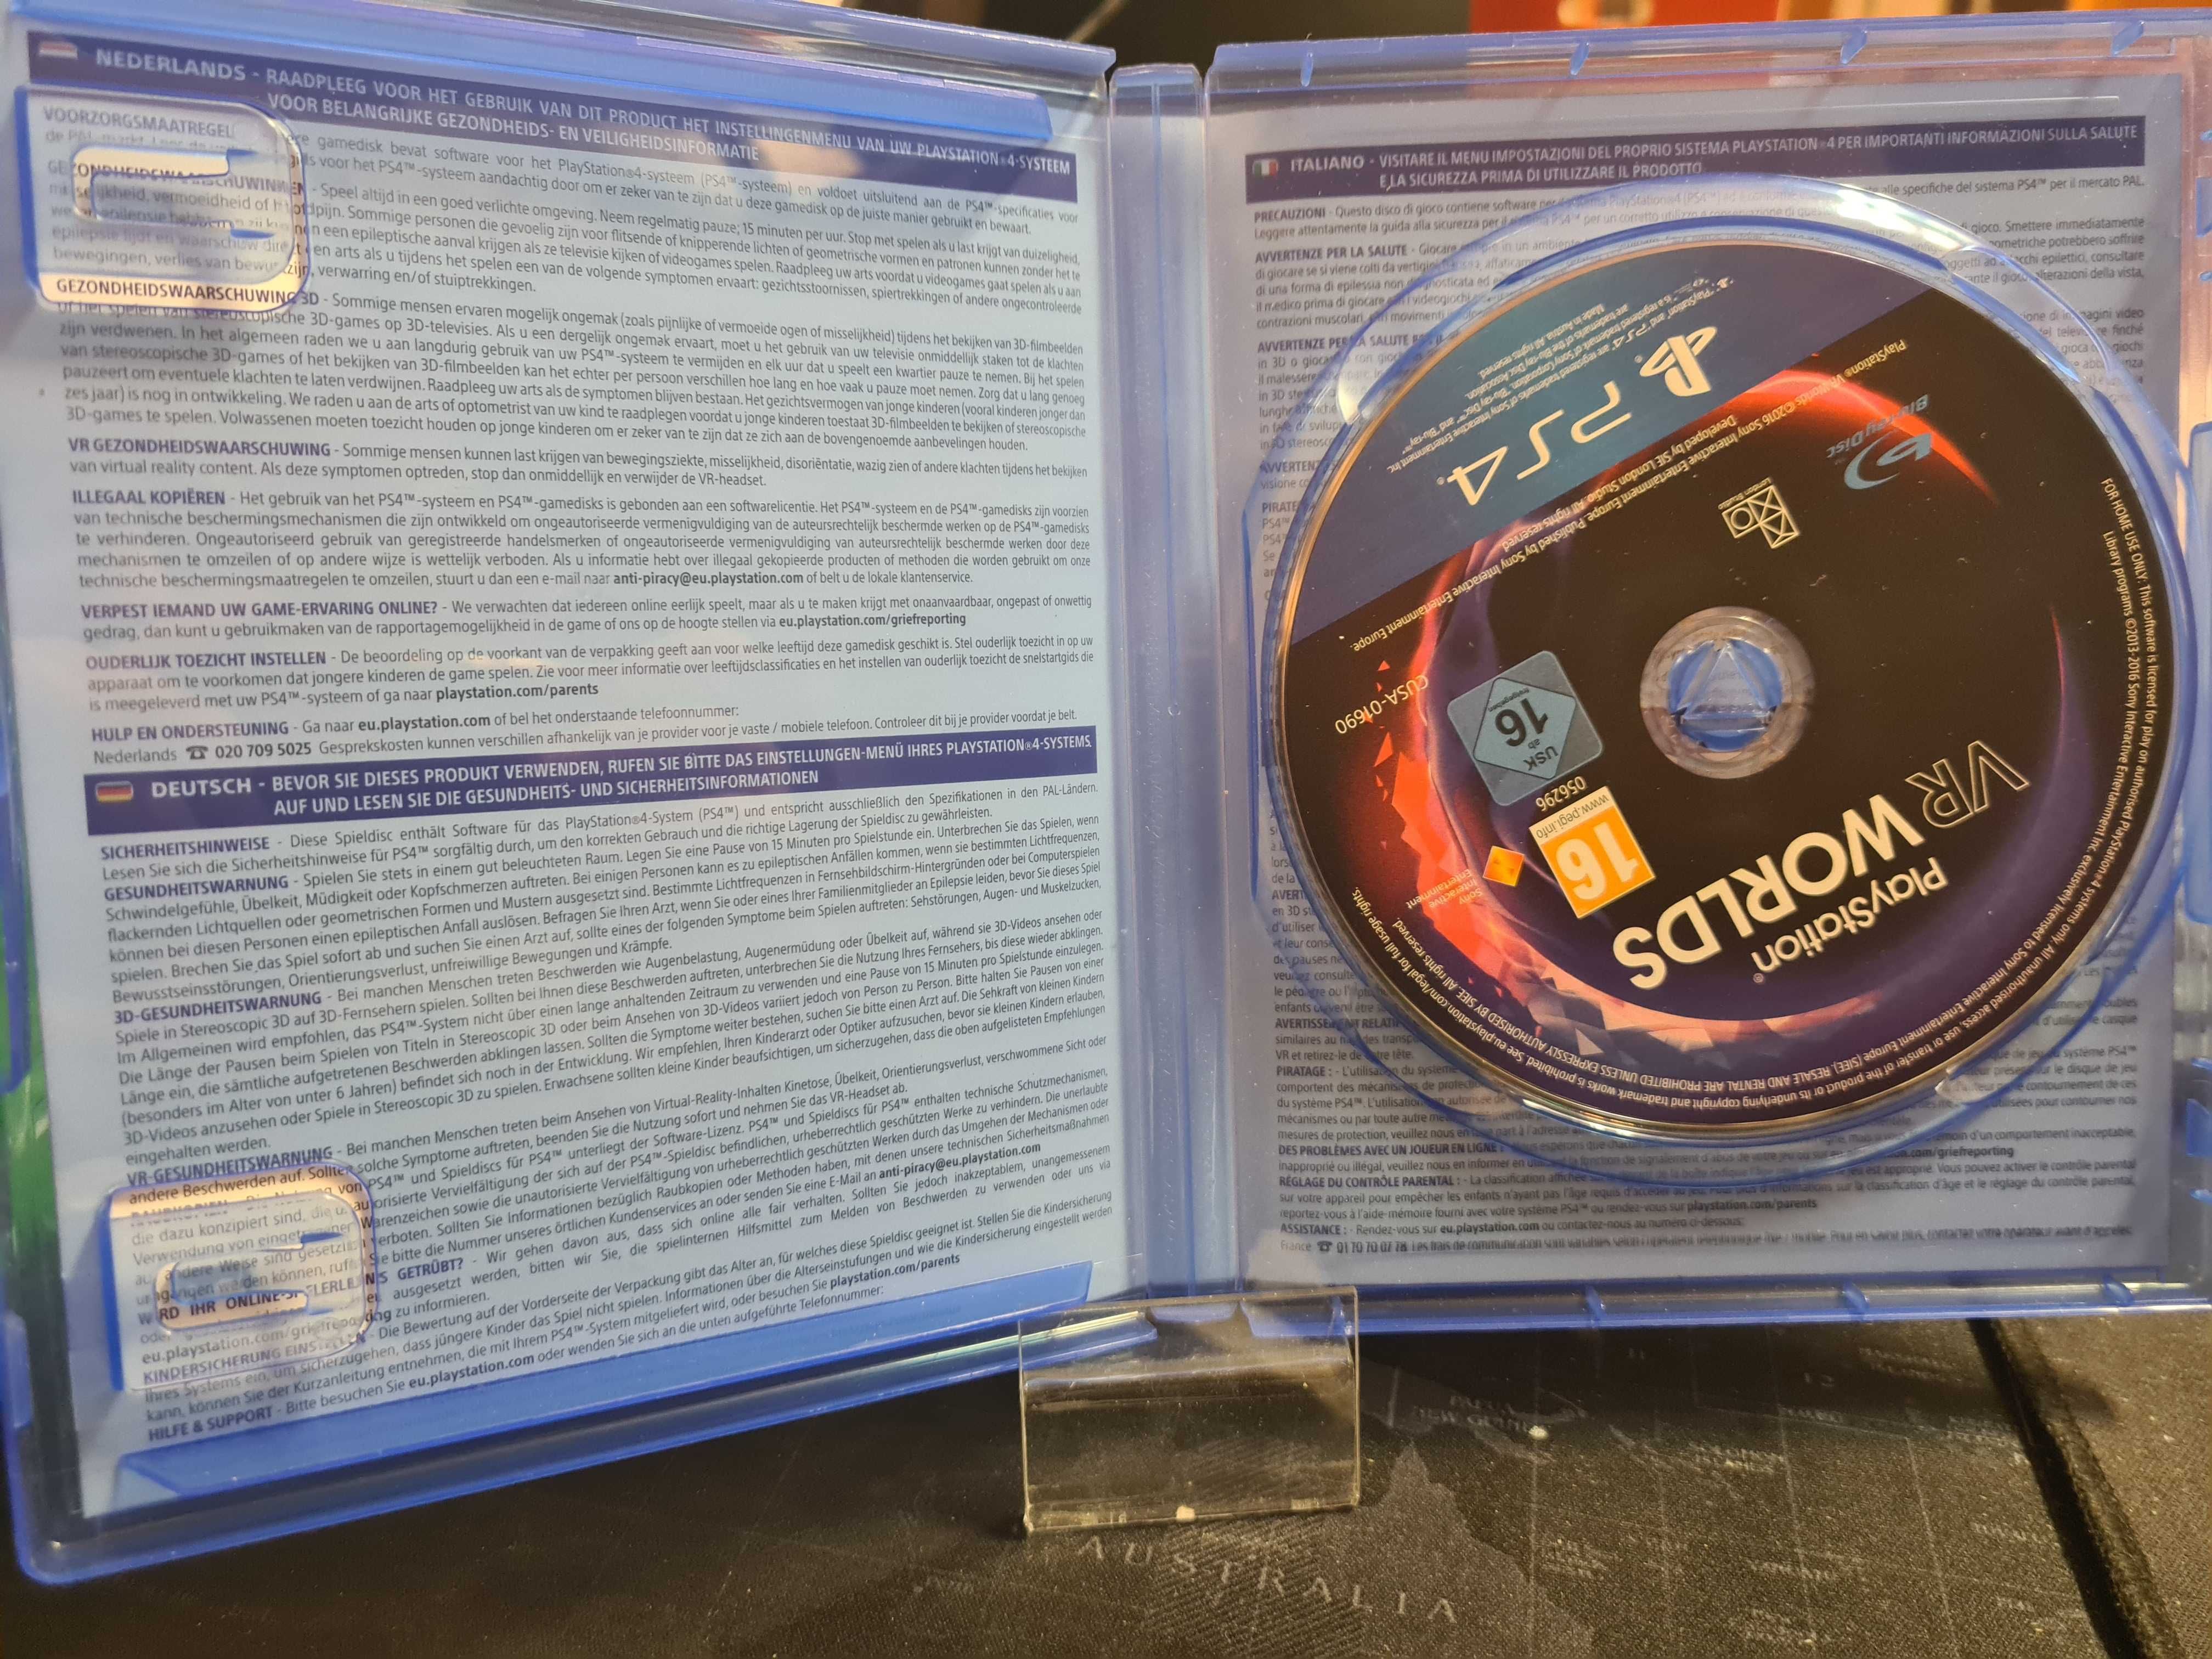 PlayStation VR Worlds PS4 SklepRetroWWA Wysyłka Wymiana